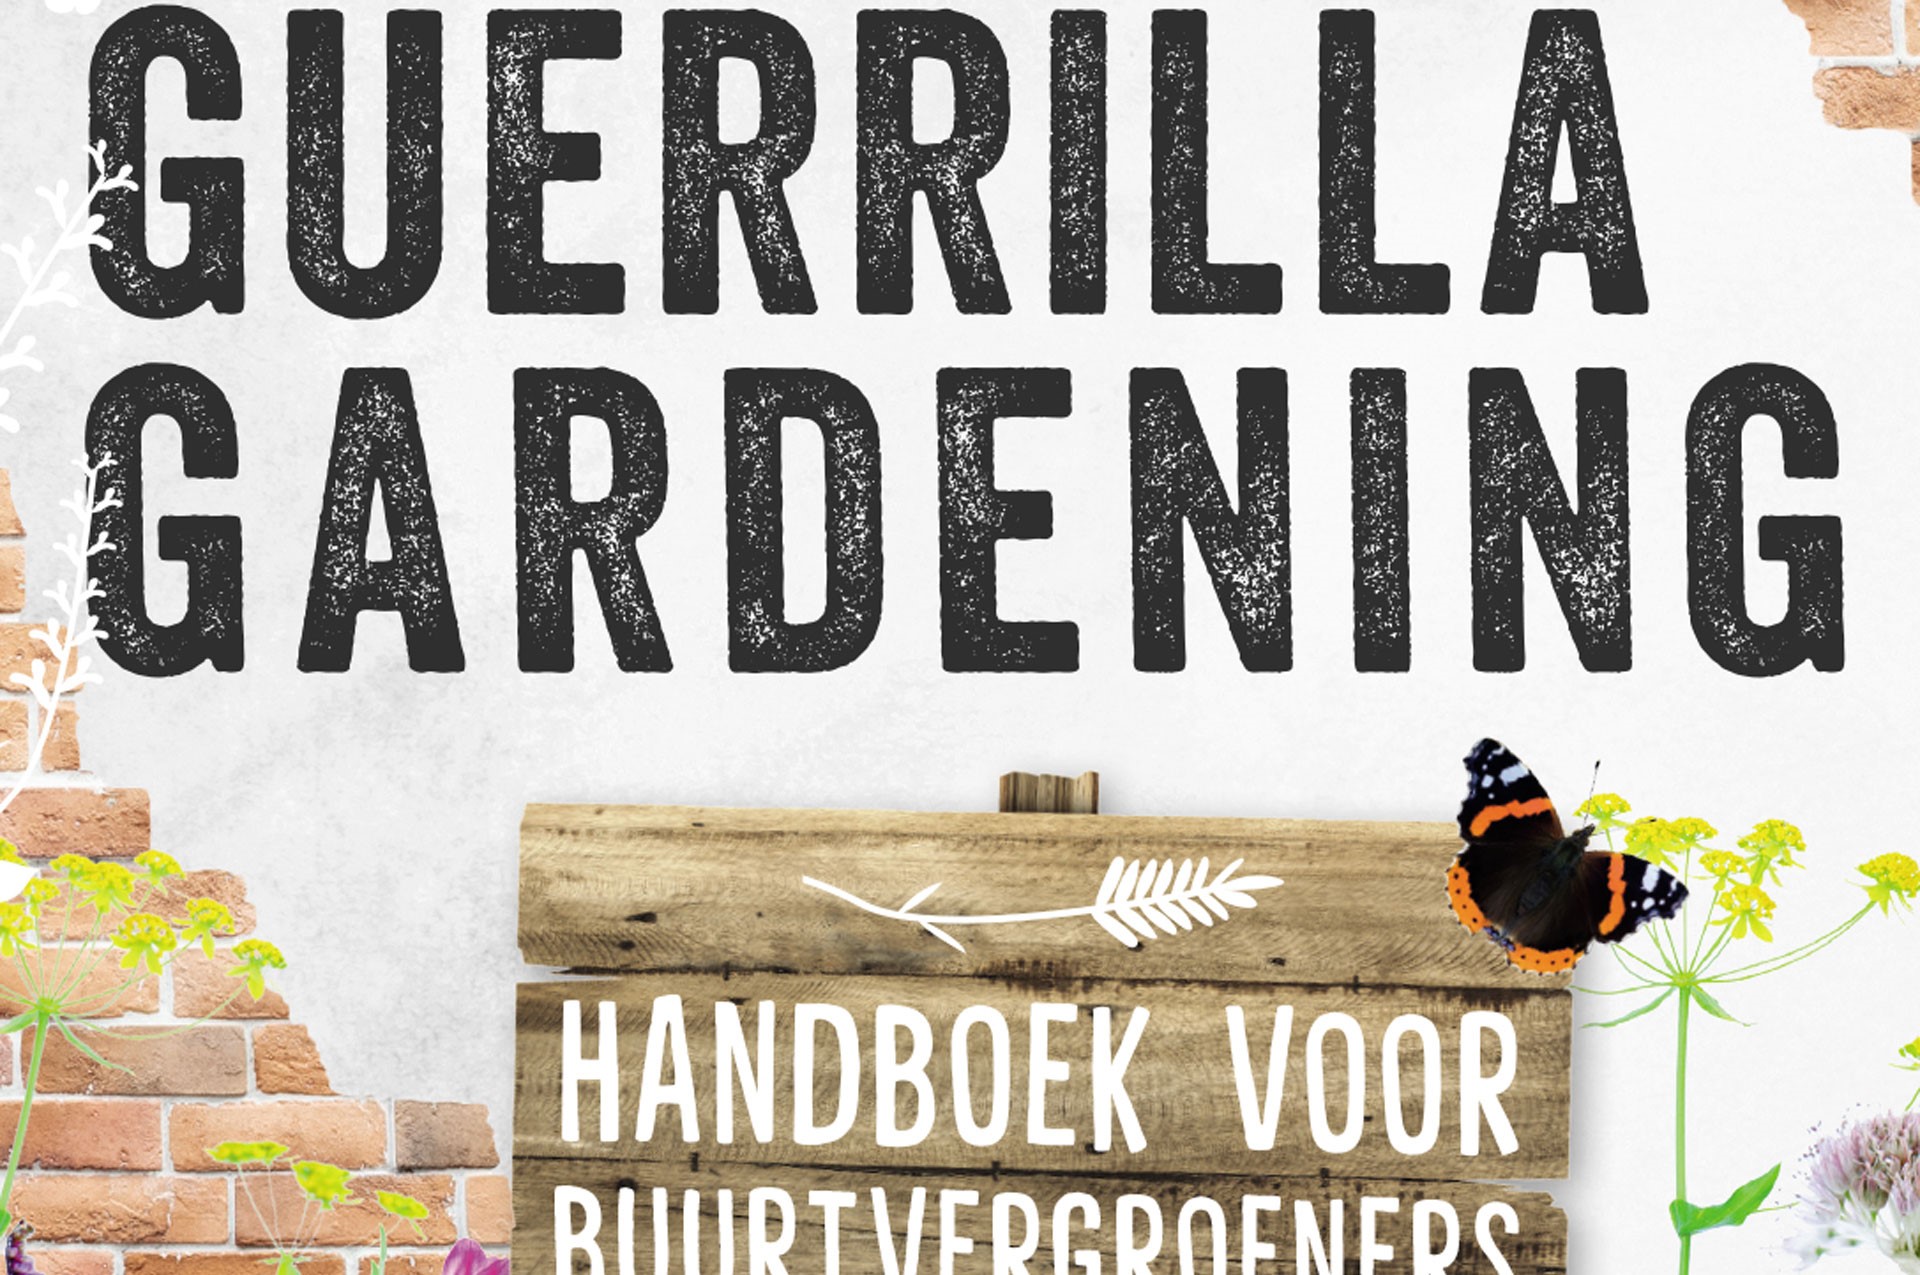 Guerrilla Gardening, Handboek voor buurtvergroener